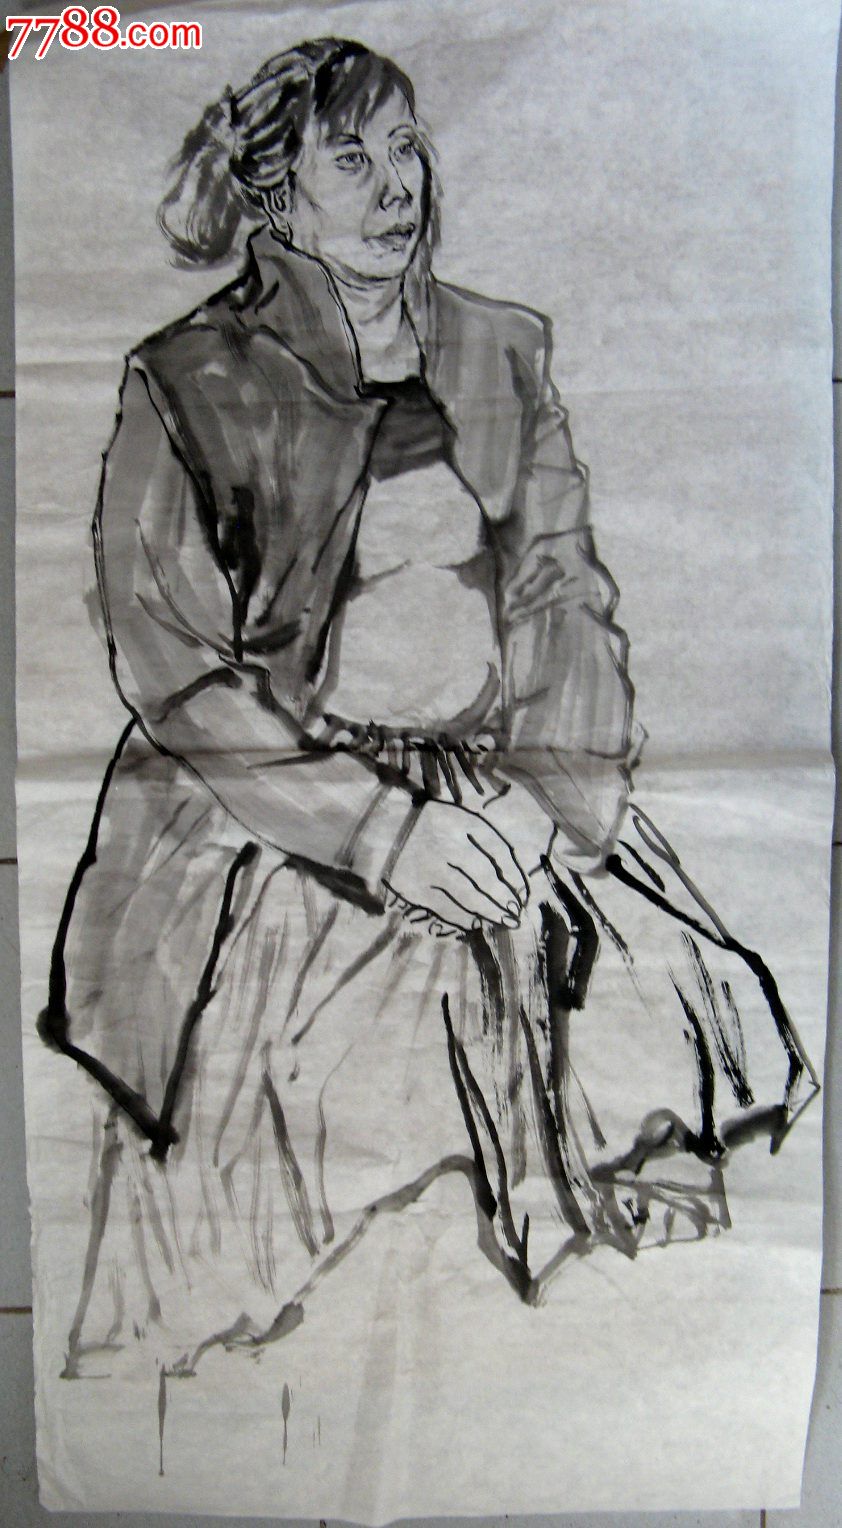 四尺条幅无款写意水墨人物画:裙装中年妇女